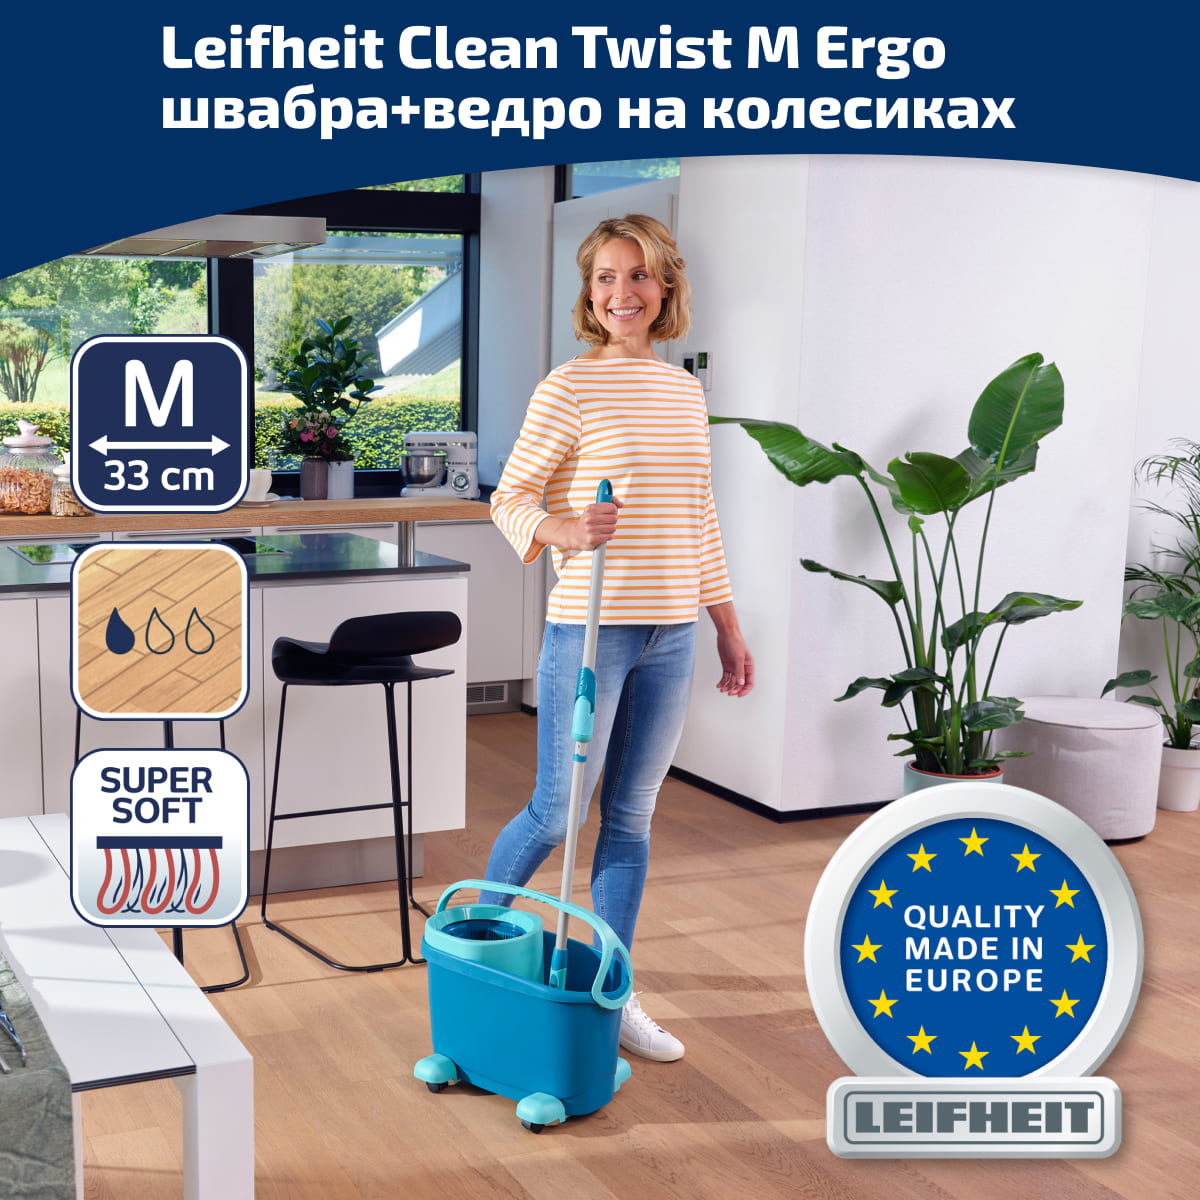 Комплект для влажной уборки Leifheit Clean Twist M Ergo швабра и ведро на колесиках Leifheit 52121, цвет зеленый